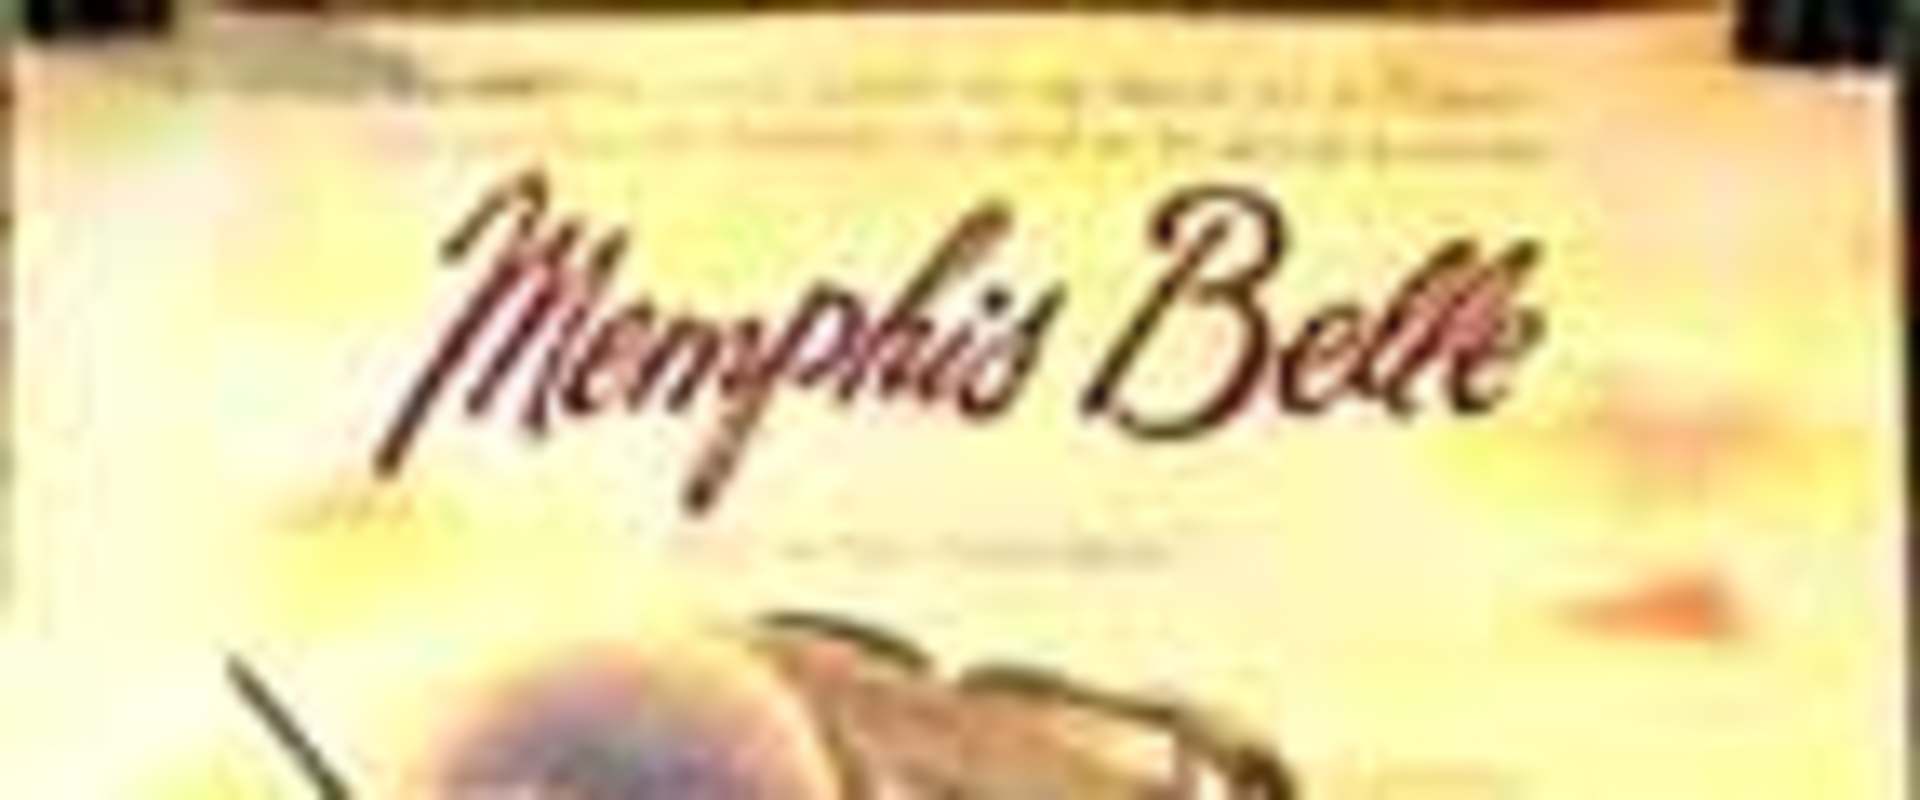 Memphis Belle background 1